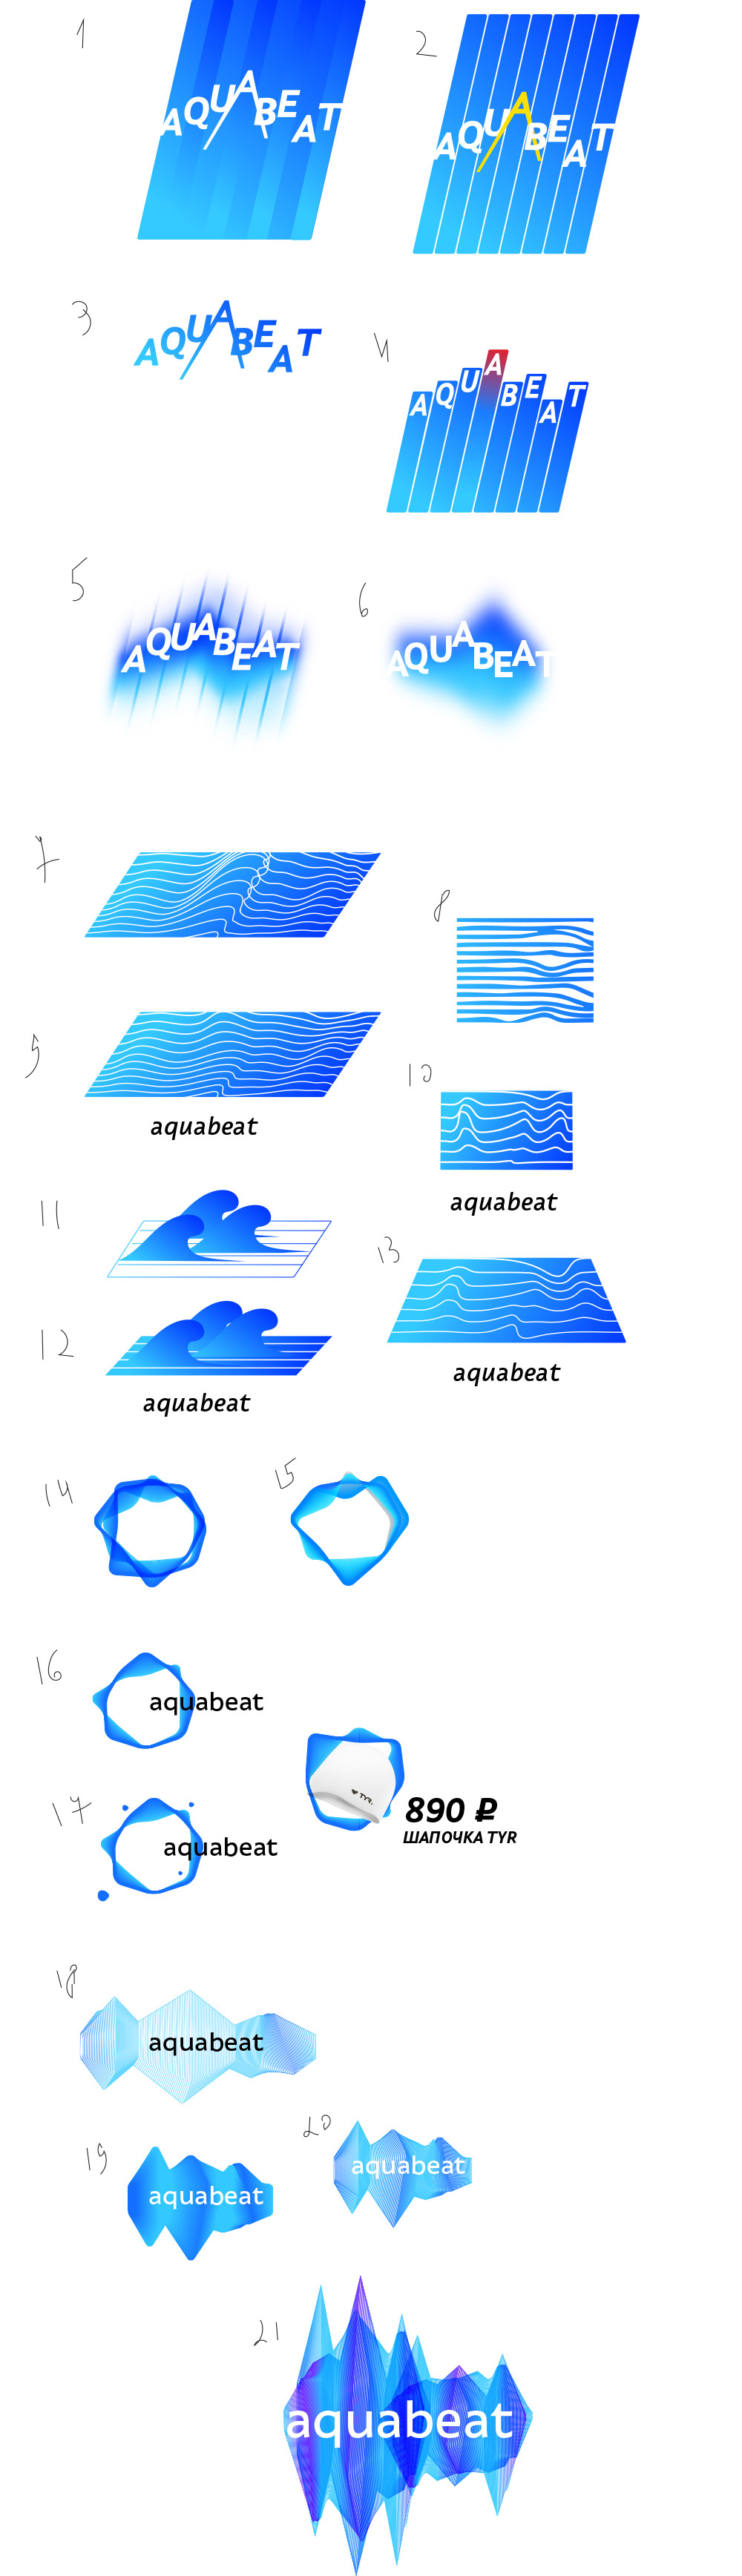 aquabeat process 07